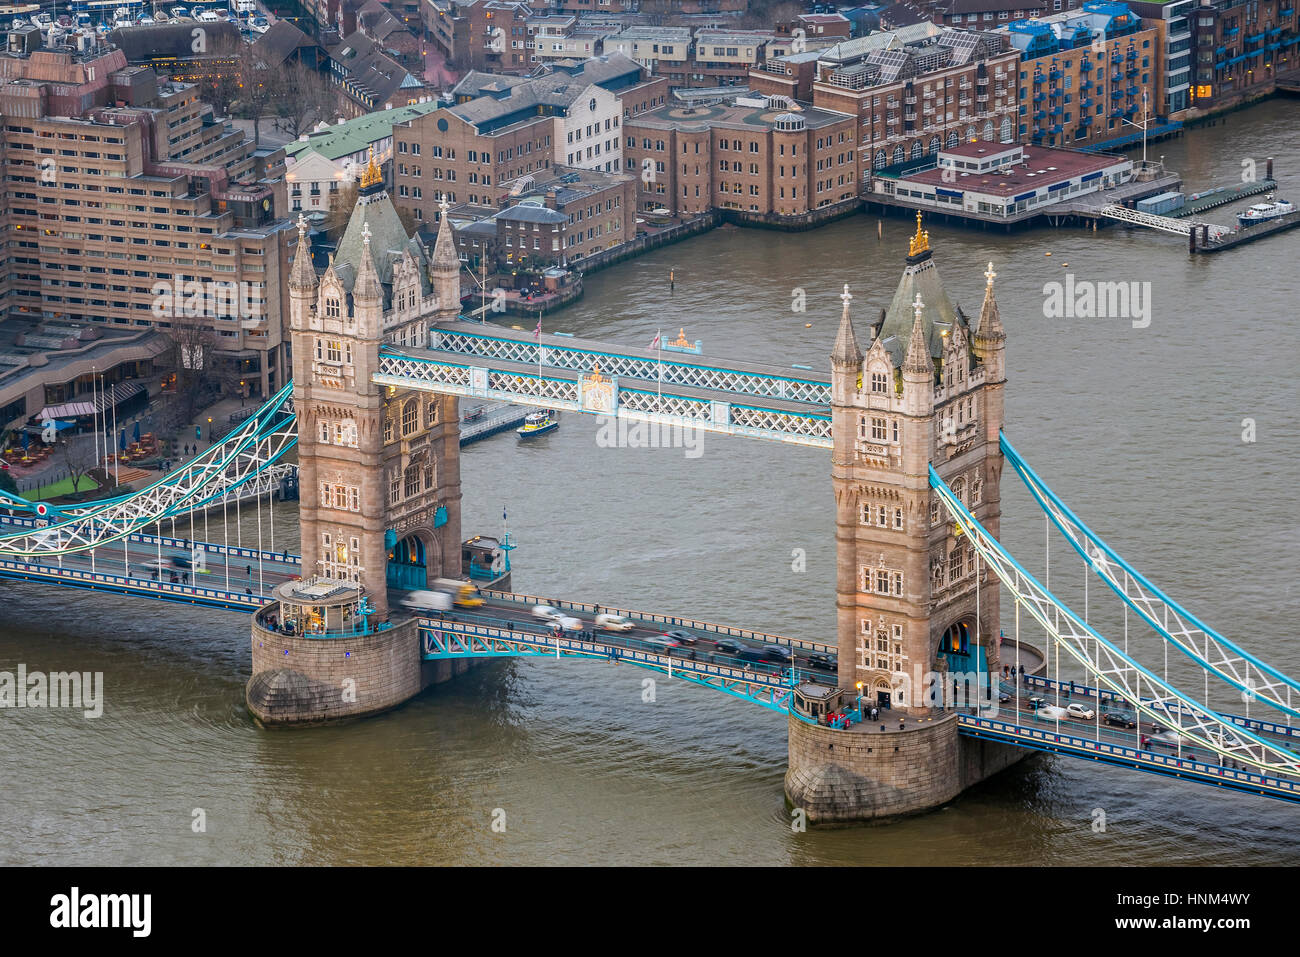 London, England - Luftbild von der weltweit berühmten Tower Bridge Stockfoto